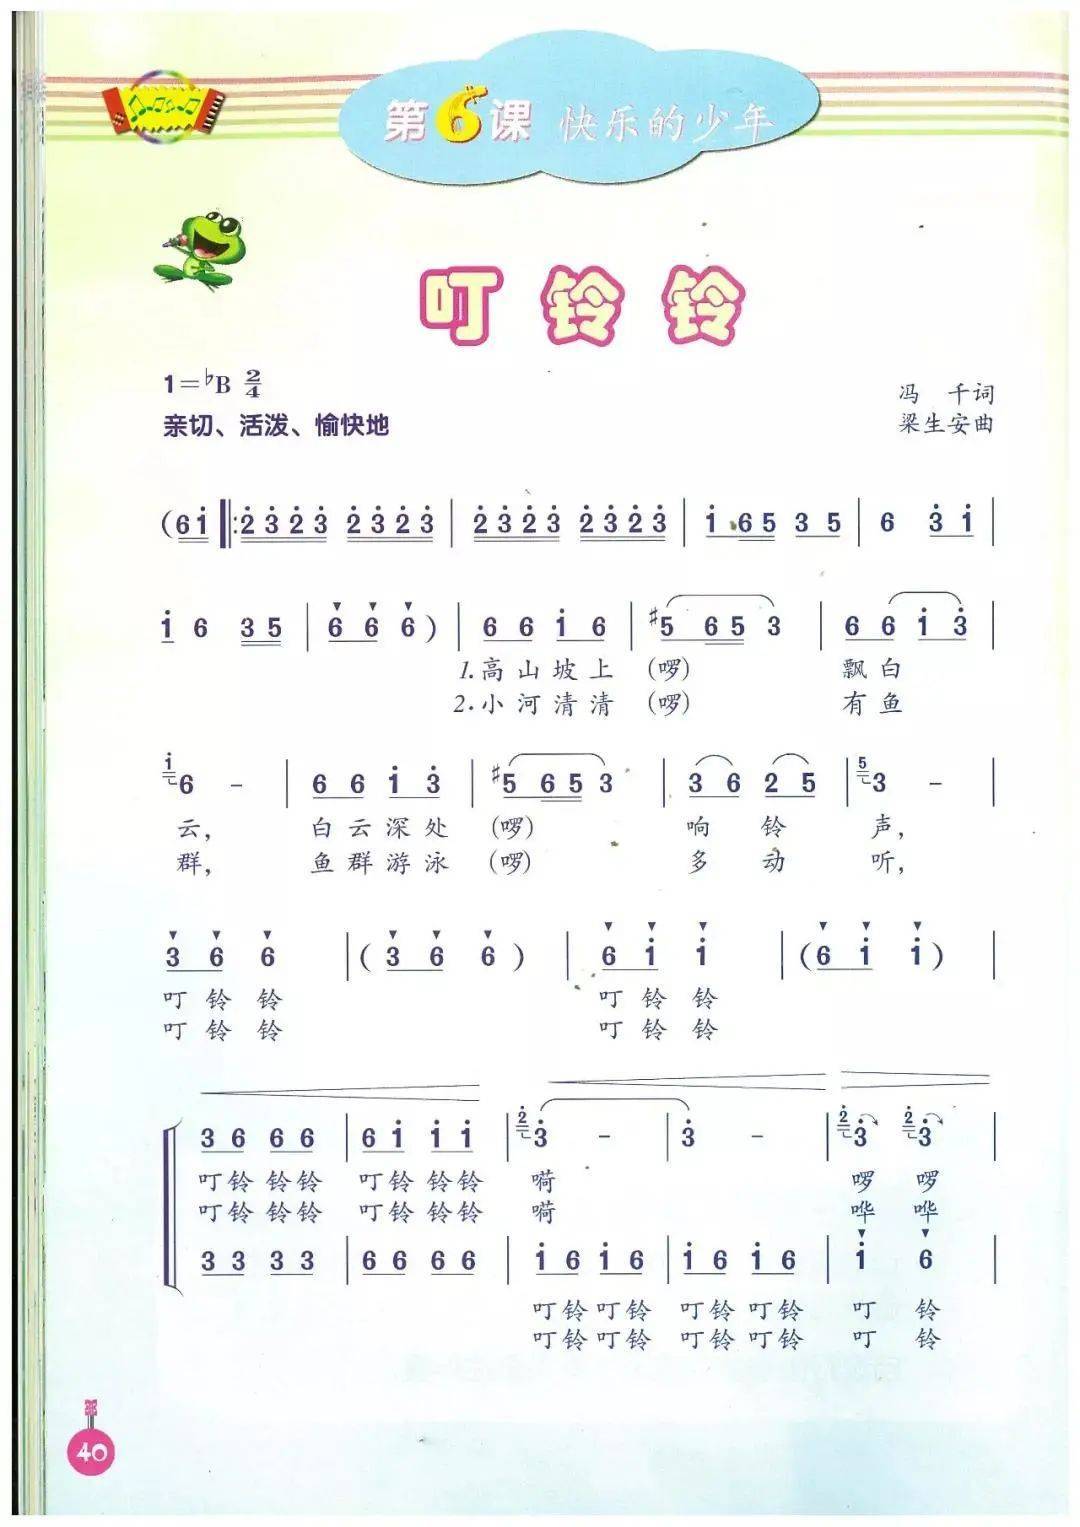 人音版五年级上册音乐(简谱)电子课本教材(高清pdf版)